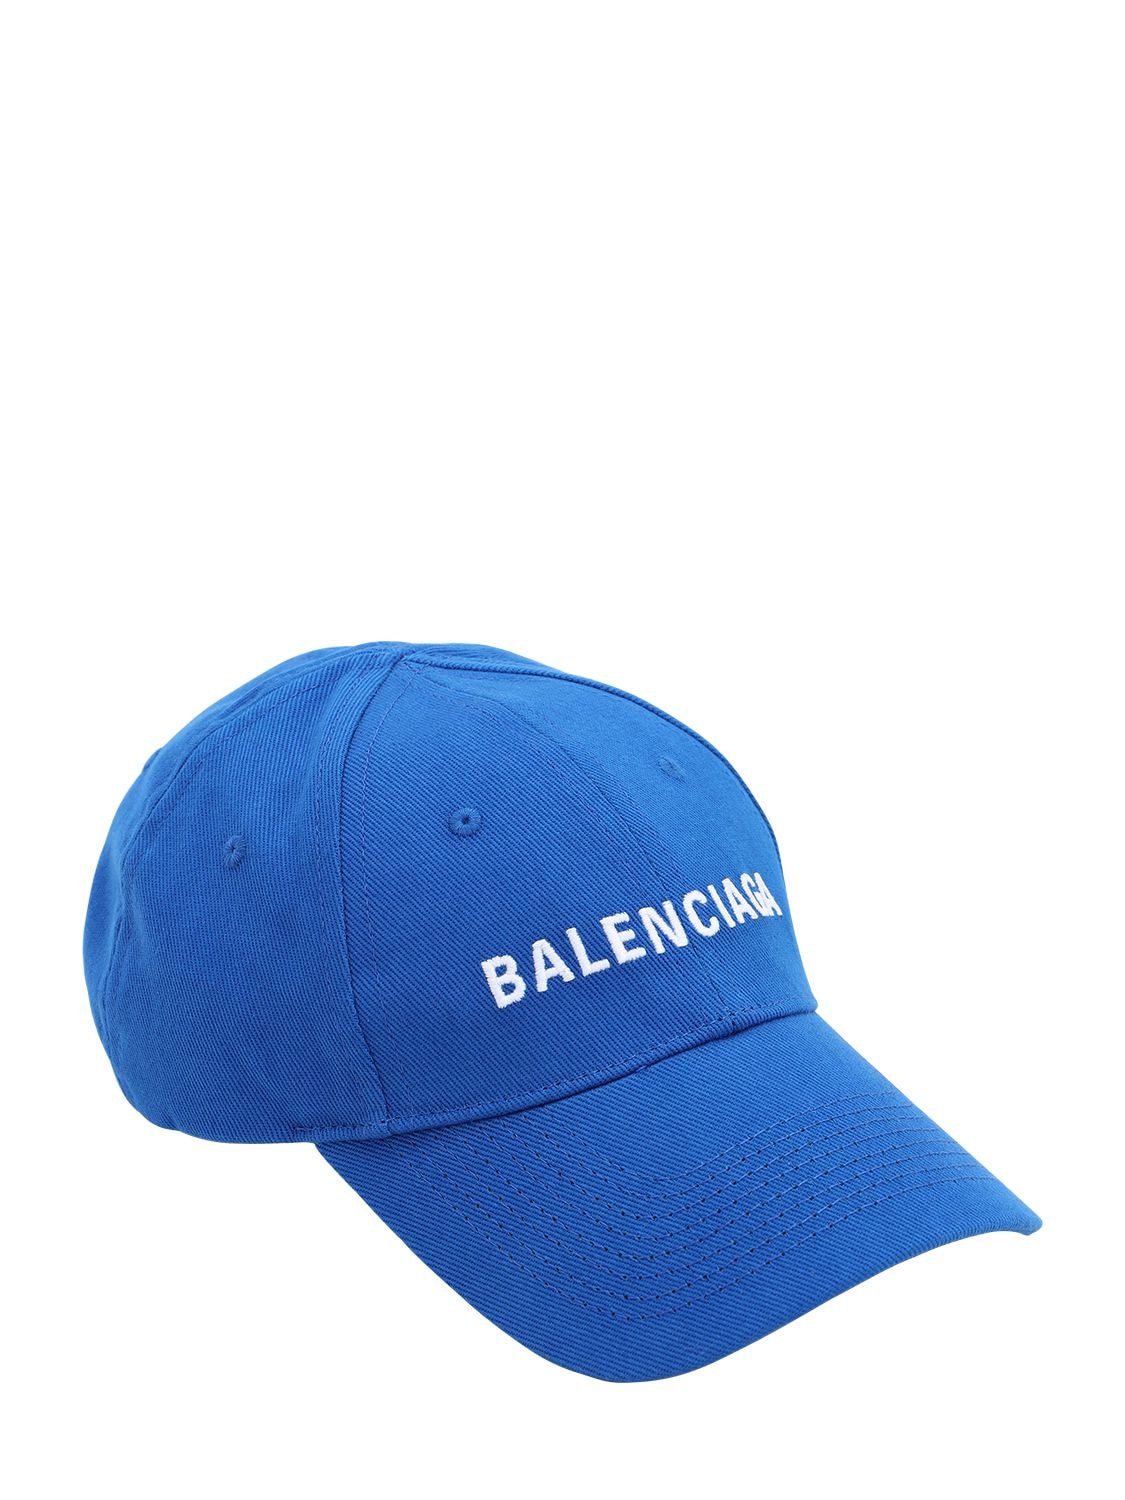 BALENCIAGA LOGO COTTON BASEBALL HAT,71IIUT063-NDI3NW2